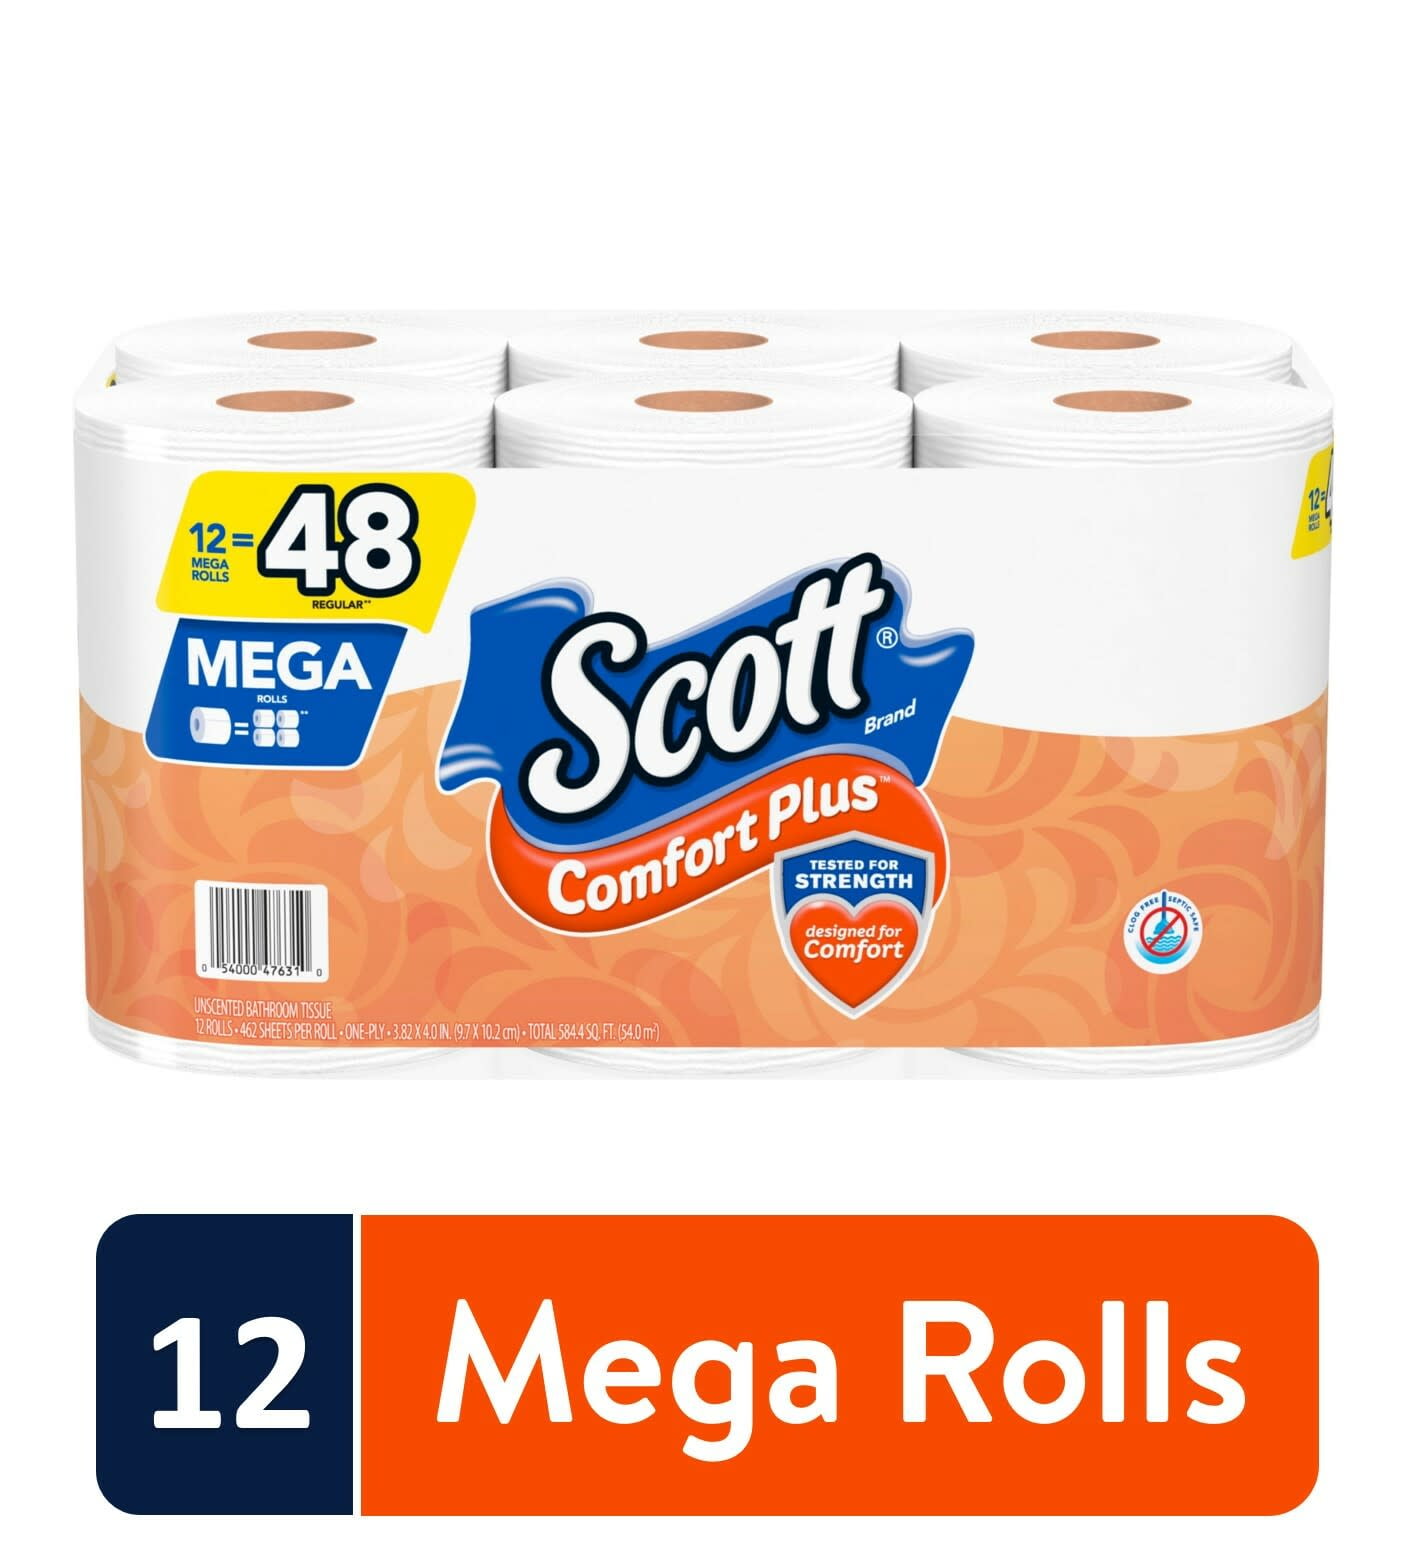 Scott ComfortPlus Toilet Paper, 12 Mega Rolls, 462 Sheets per Roll